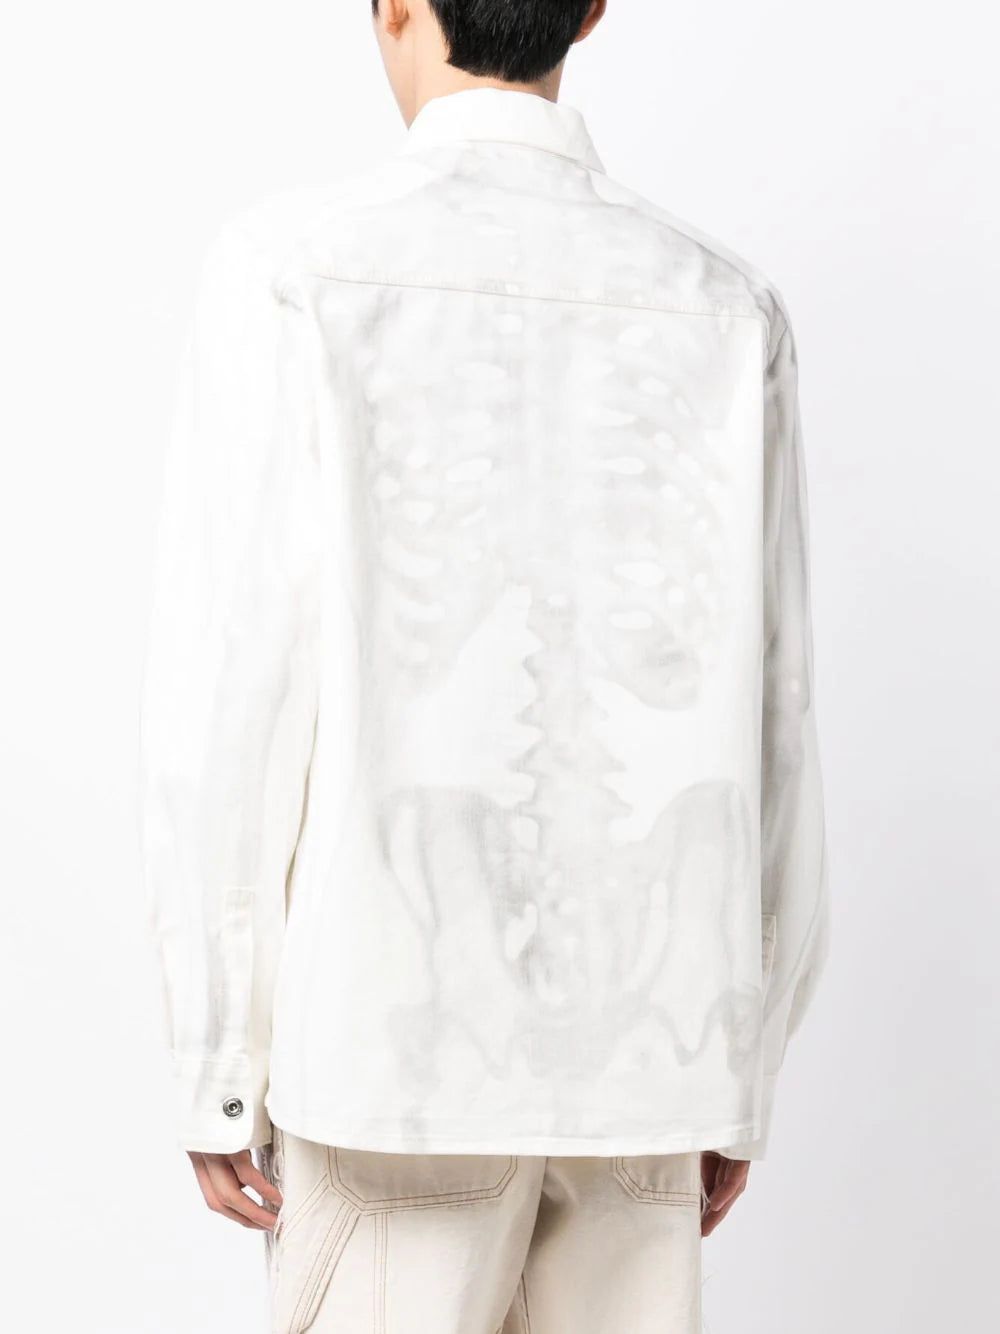 Off-White Denim Full Sleeves Shirt|147024802